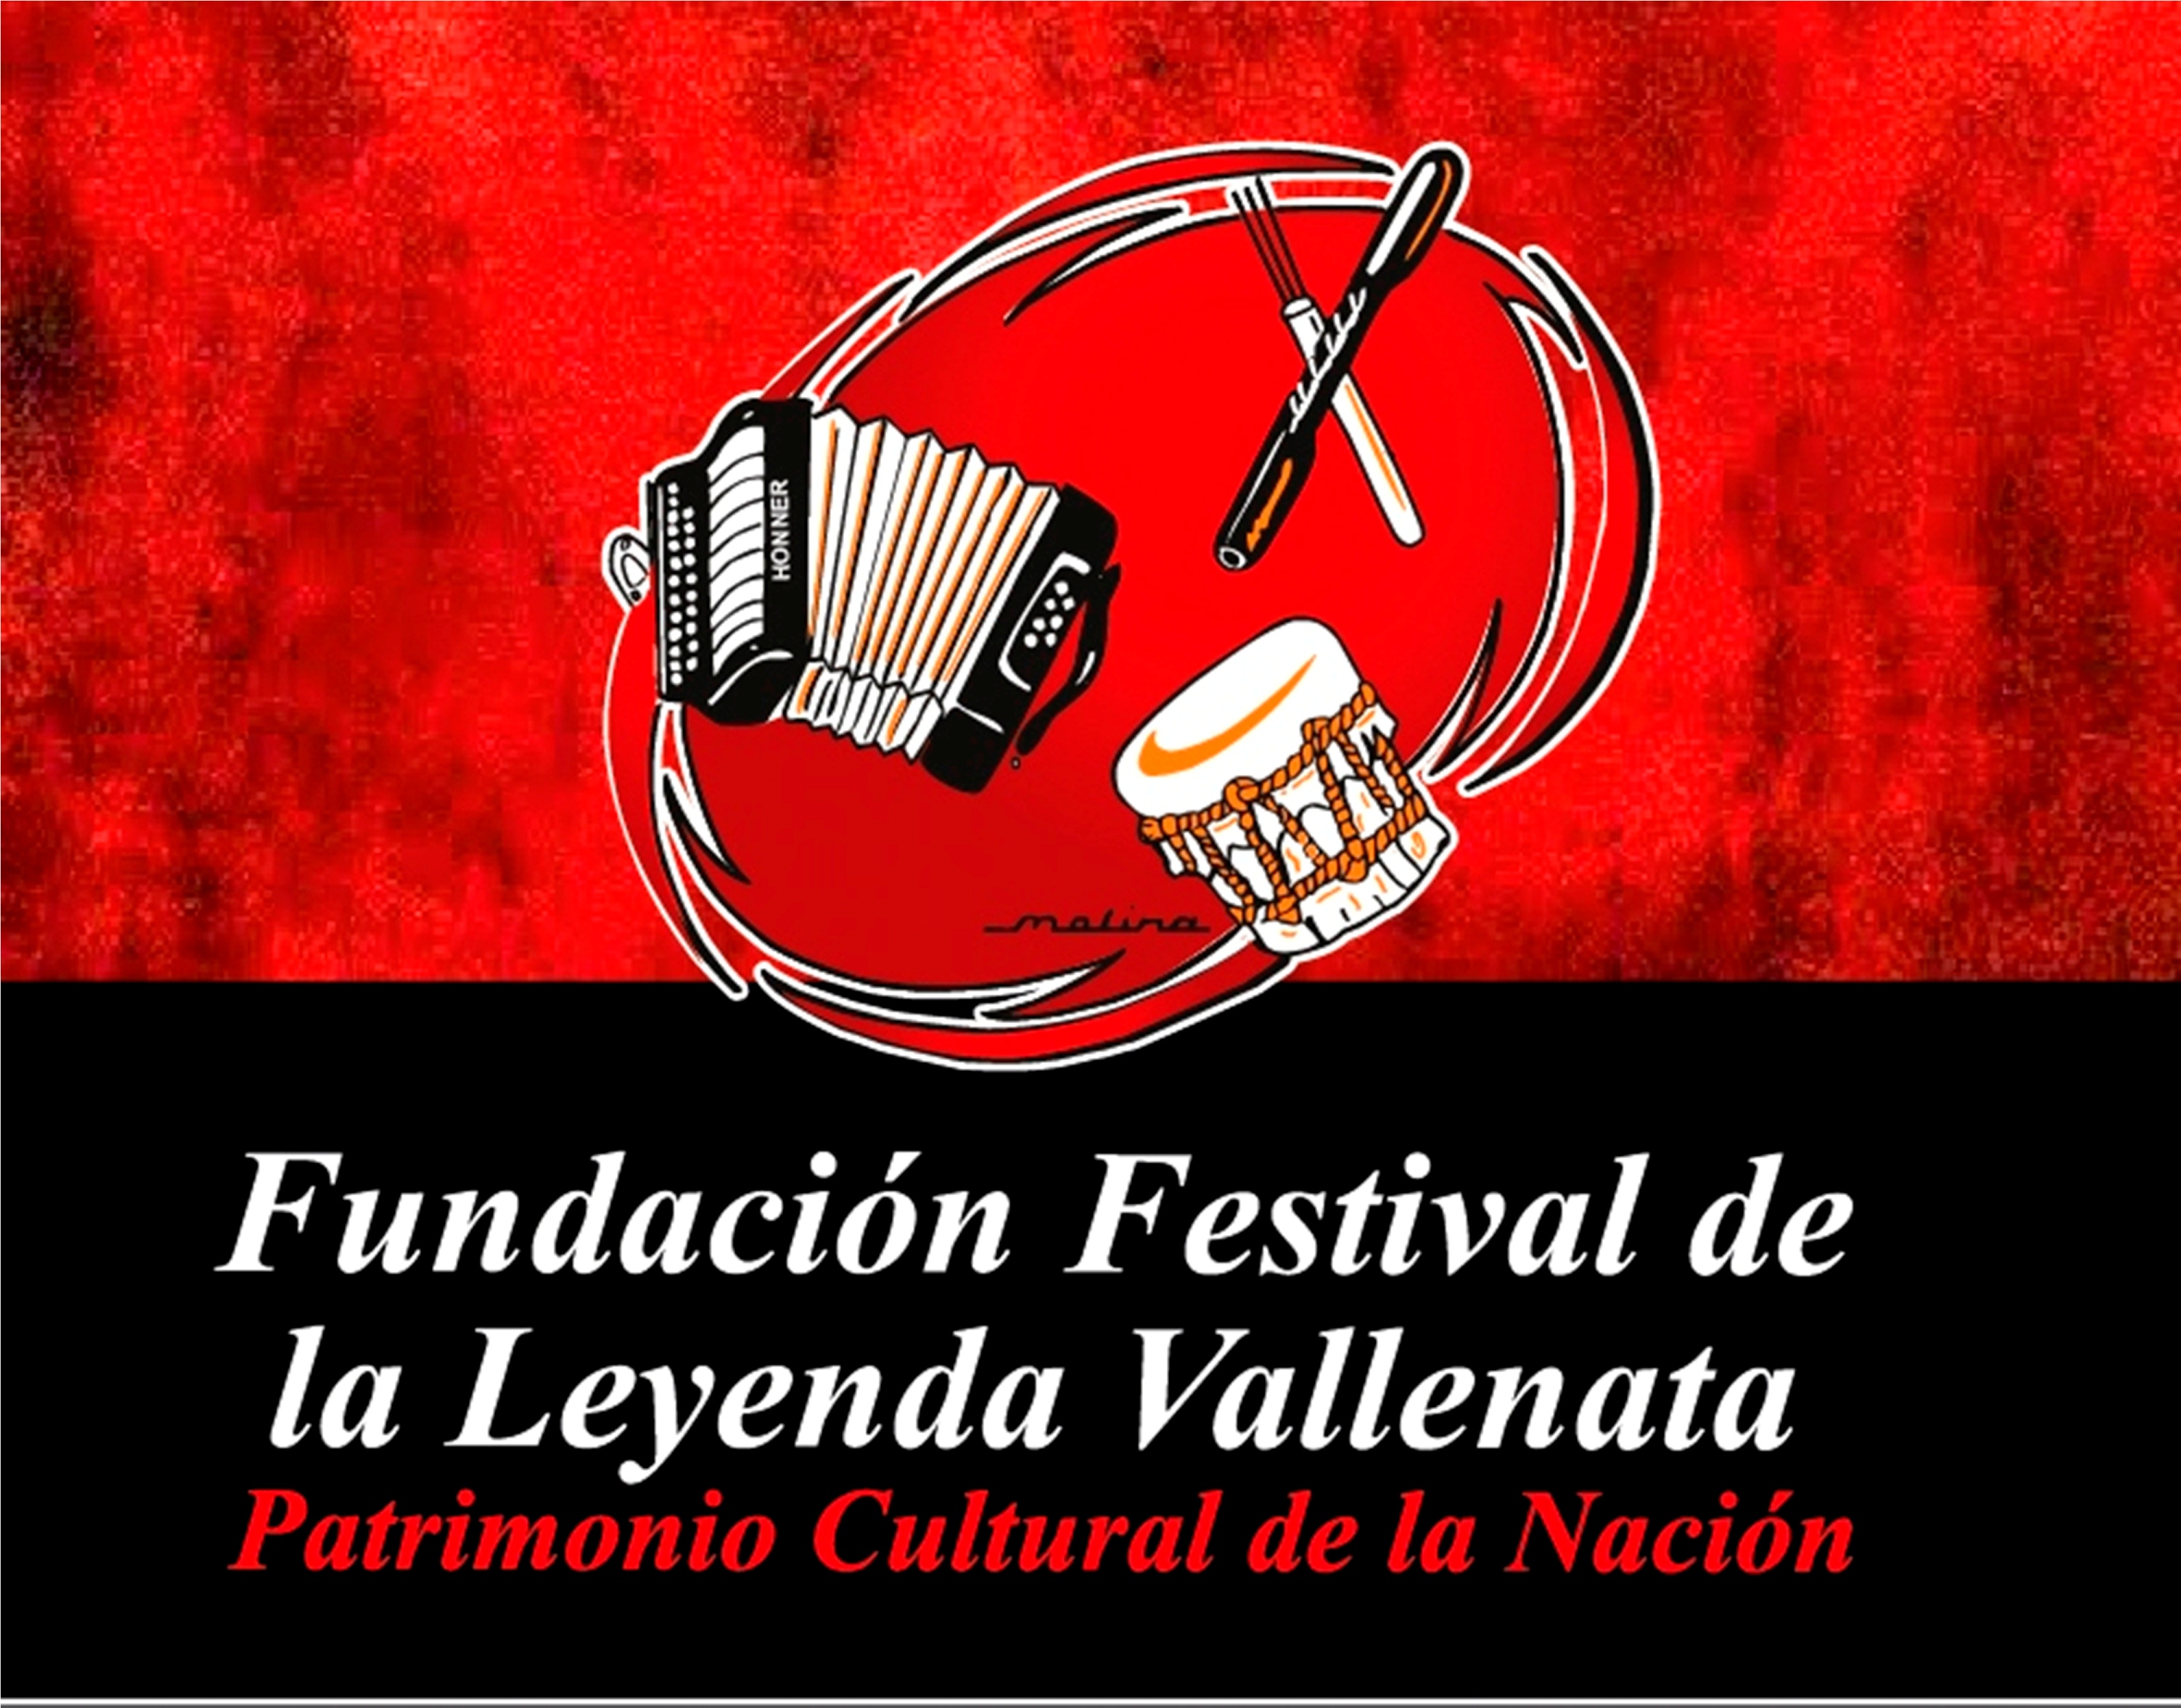 Por sus aportes y defensa al folclor, la Fundación Festival de la Leyenda Vallenata exaltará a juglares y gestores culturales